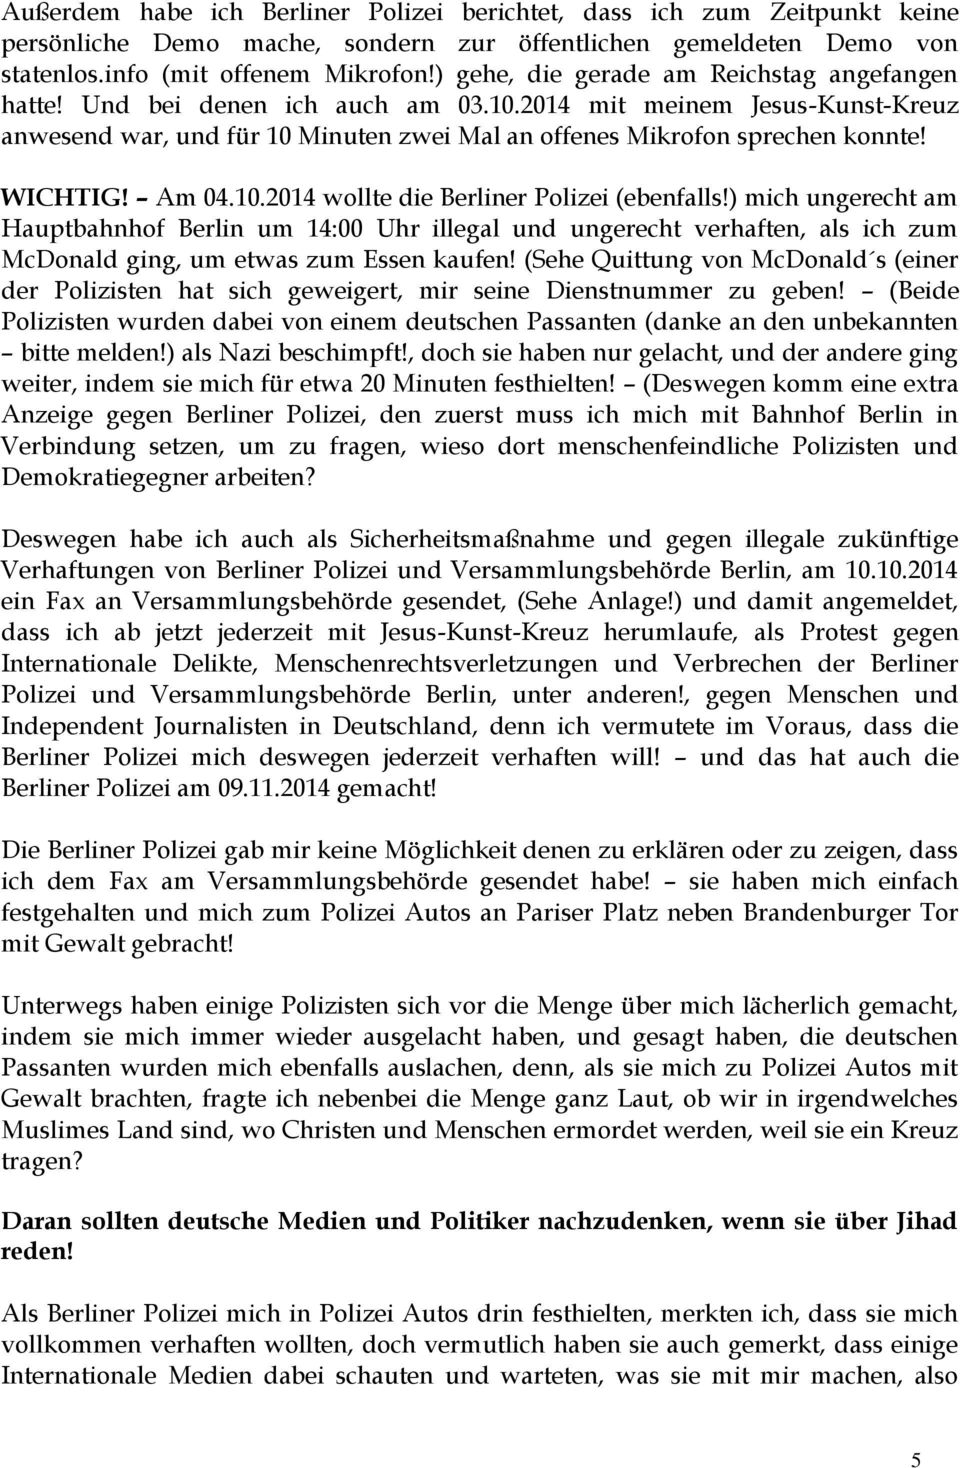 WICHTIG! Am 04.10.2014 wollte die Berliner Polizei (ebenfalls!